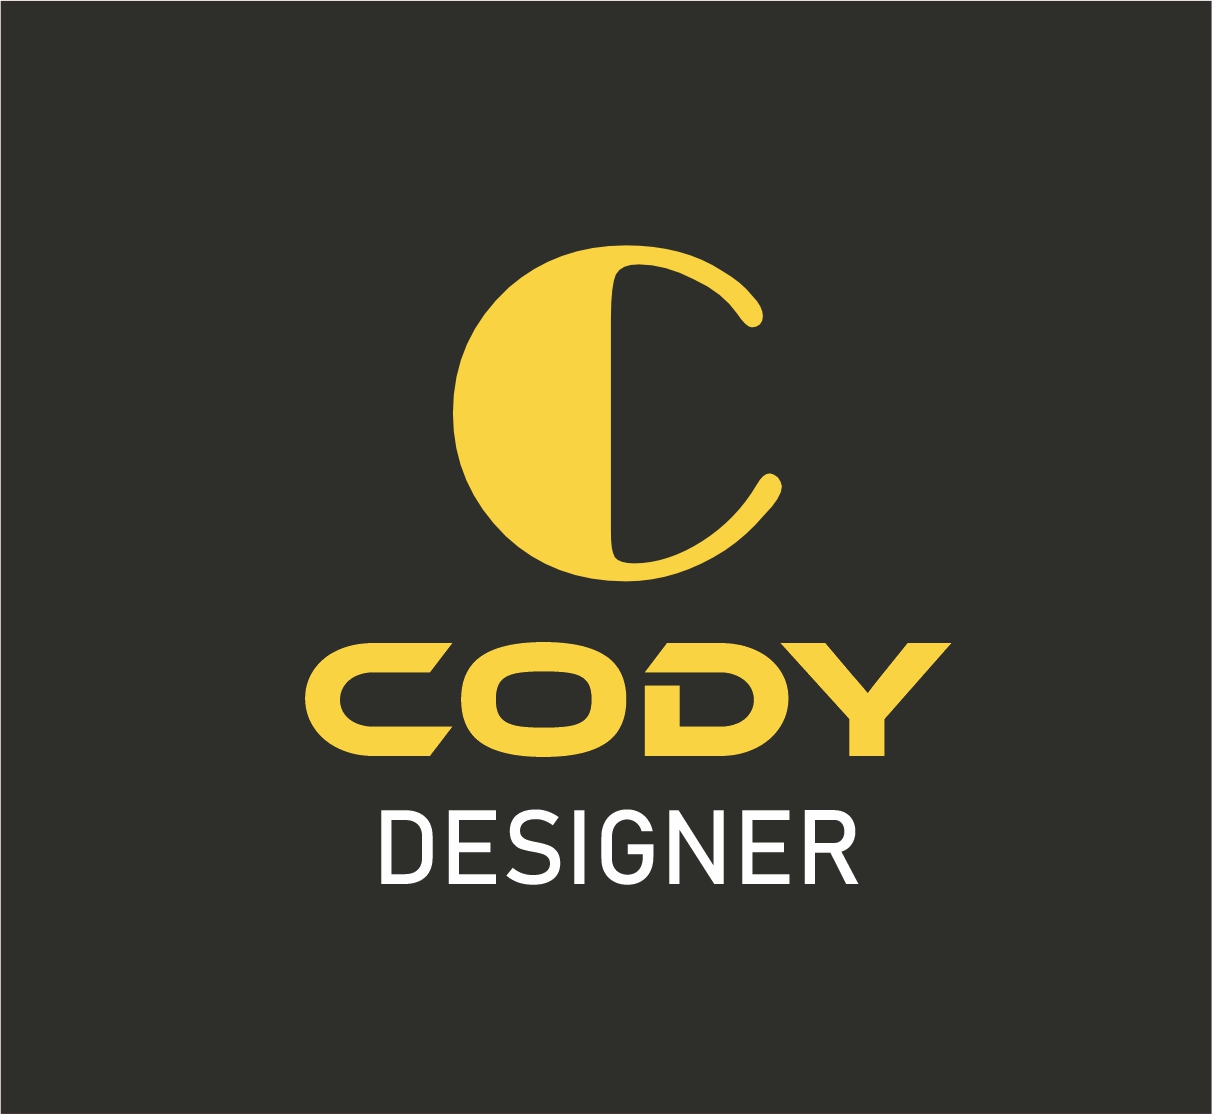 CodyDesigner Profile Picture